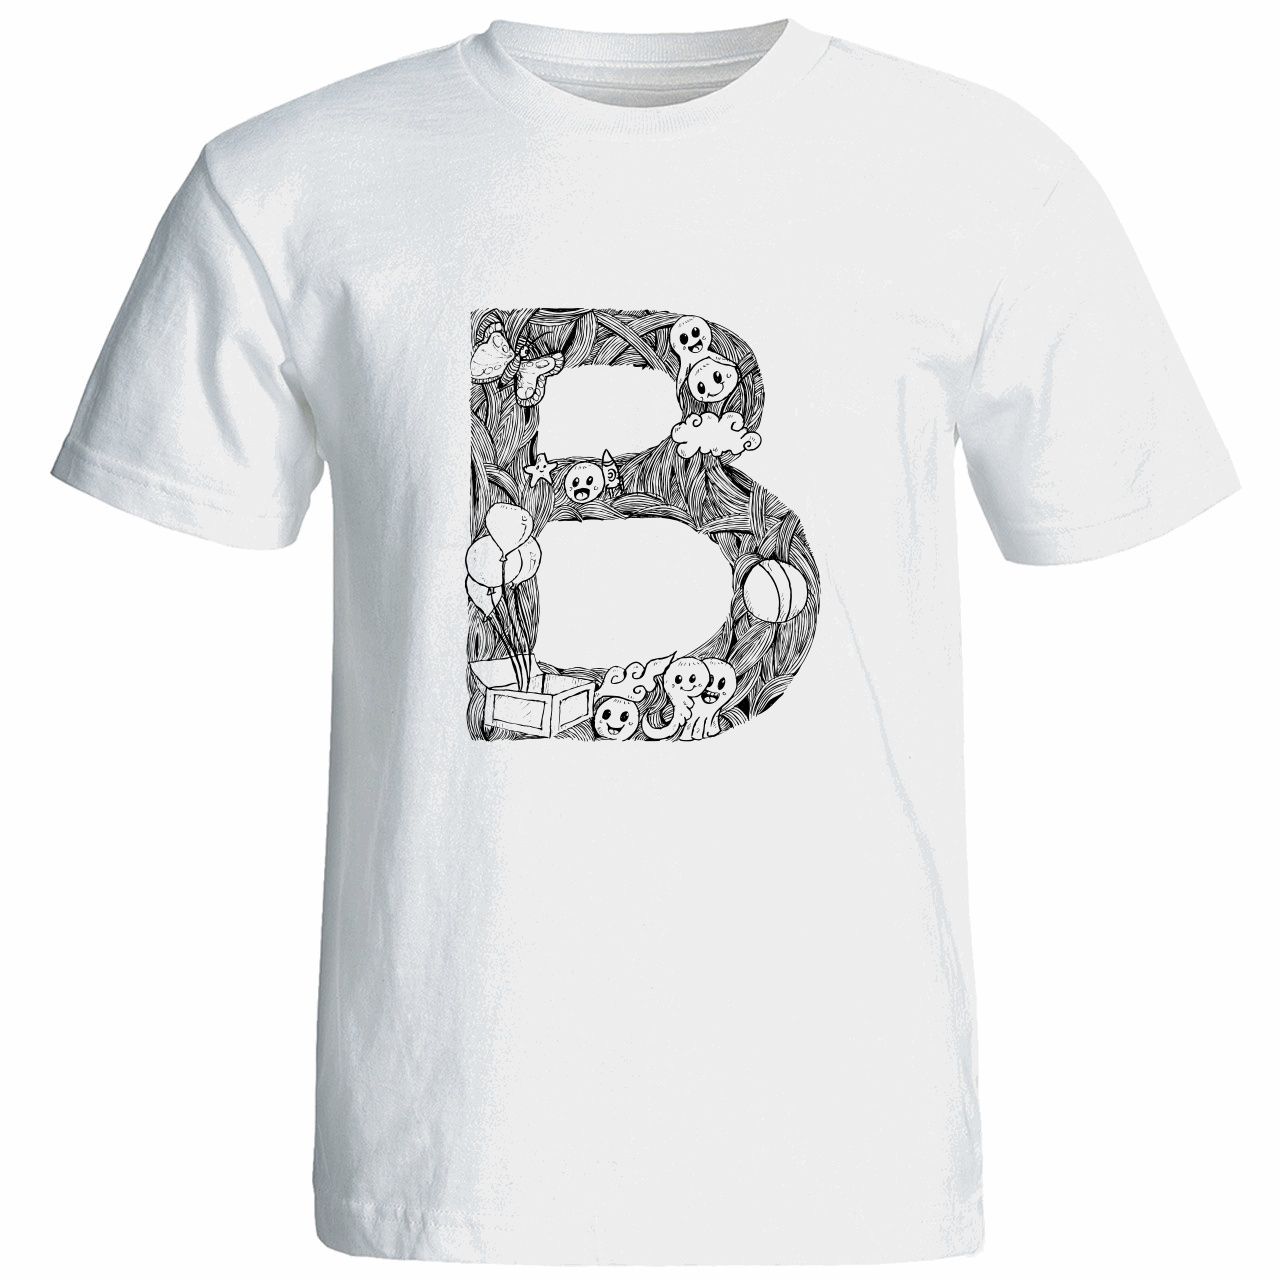 تی شرت آستین کوتاه زنانه شین دیزاین طرح حروف اول اسم B کد 4497 -  - 1